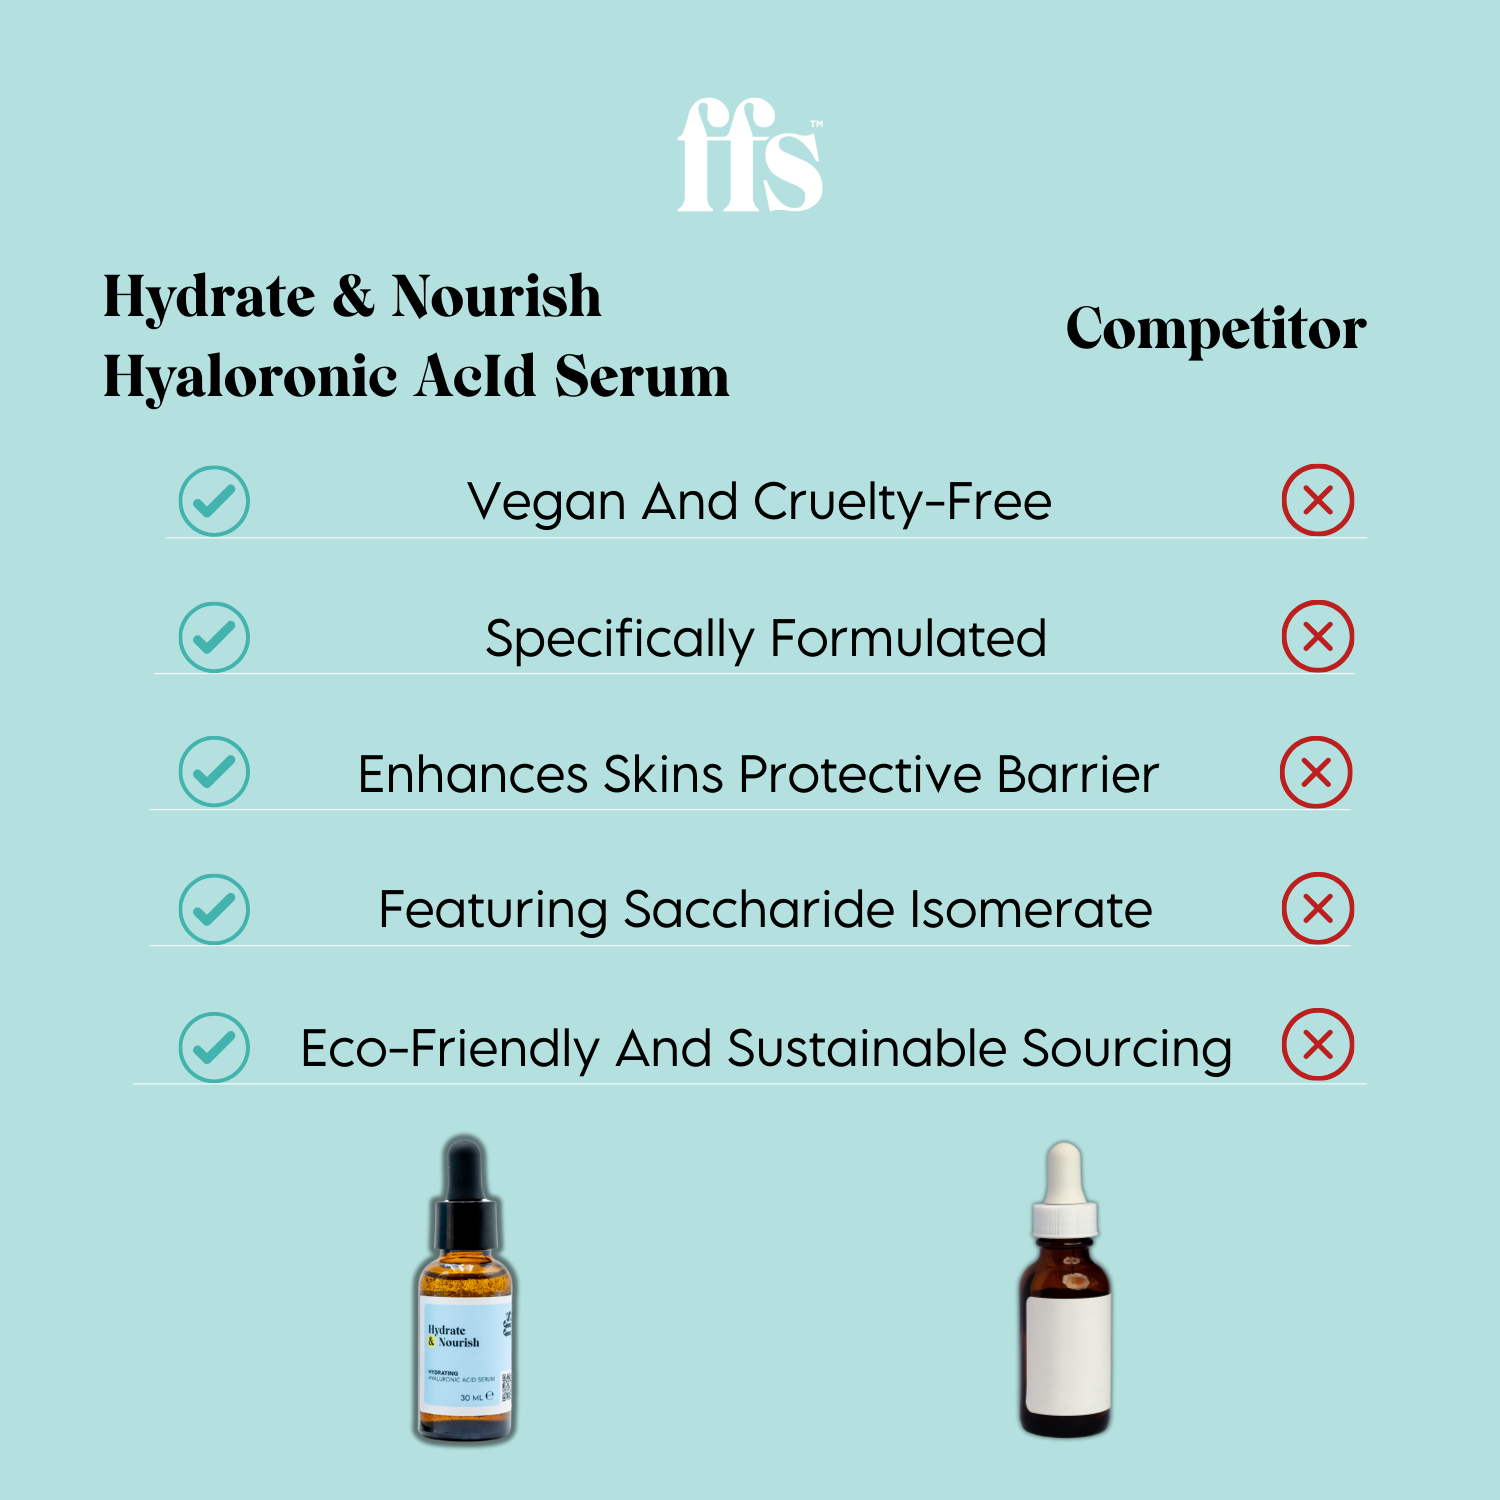 Hydrate & Nourish: Hyaluronic Acid Serum